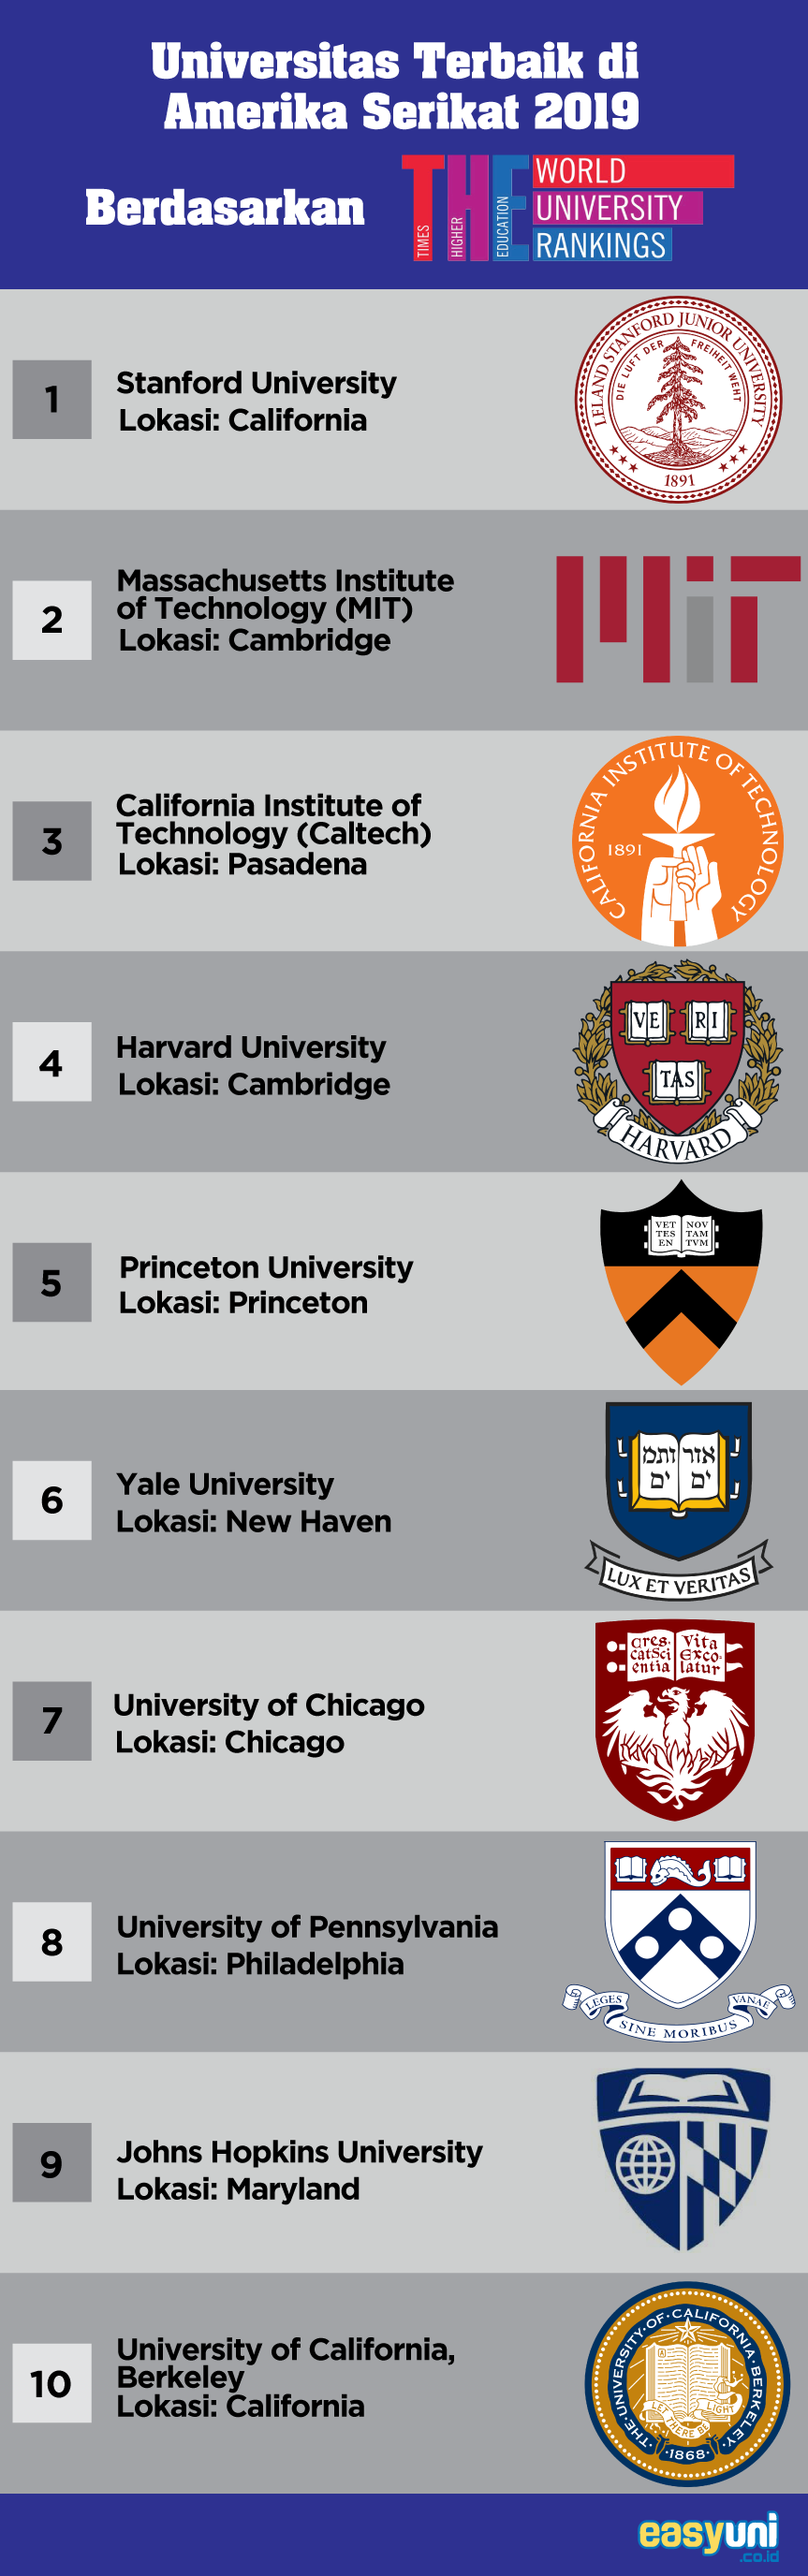 daftar ranking universitas di amerika serikat 2019